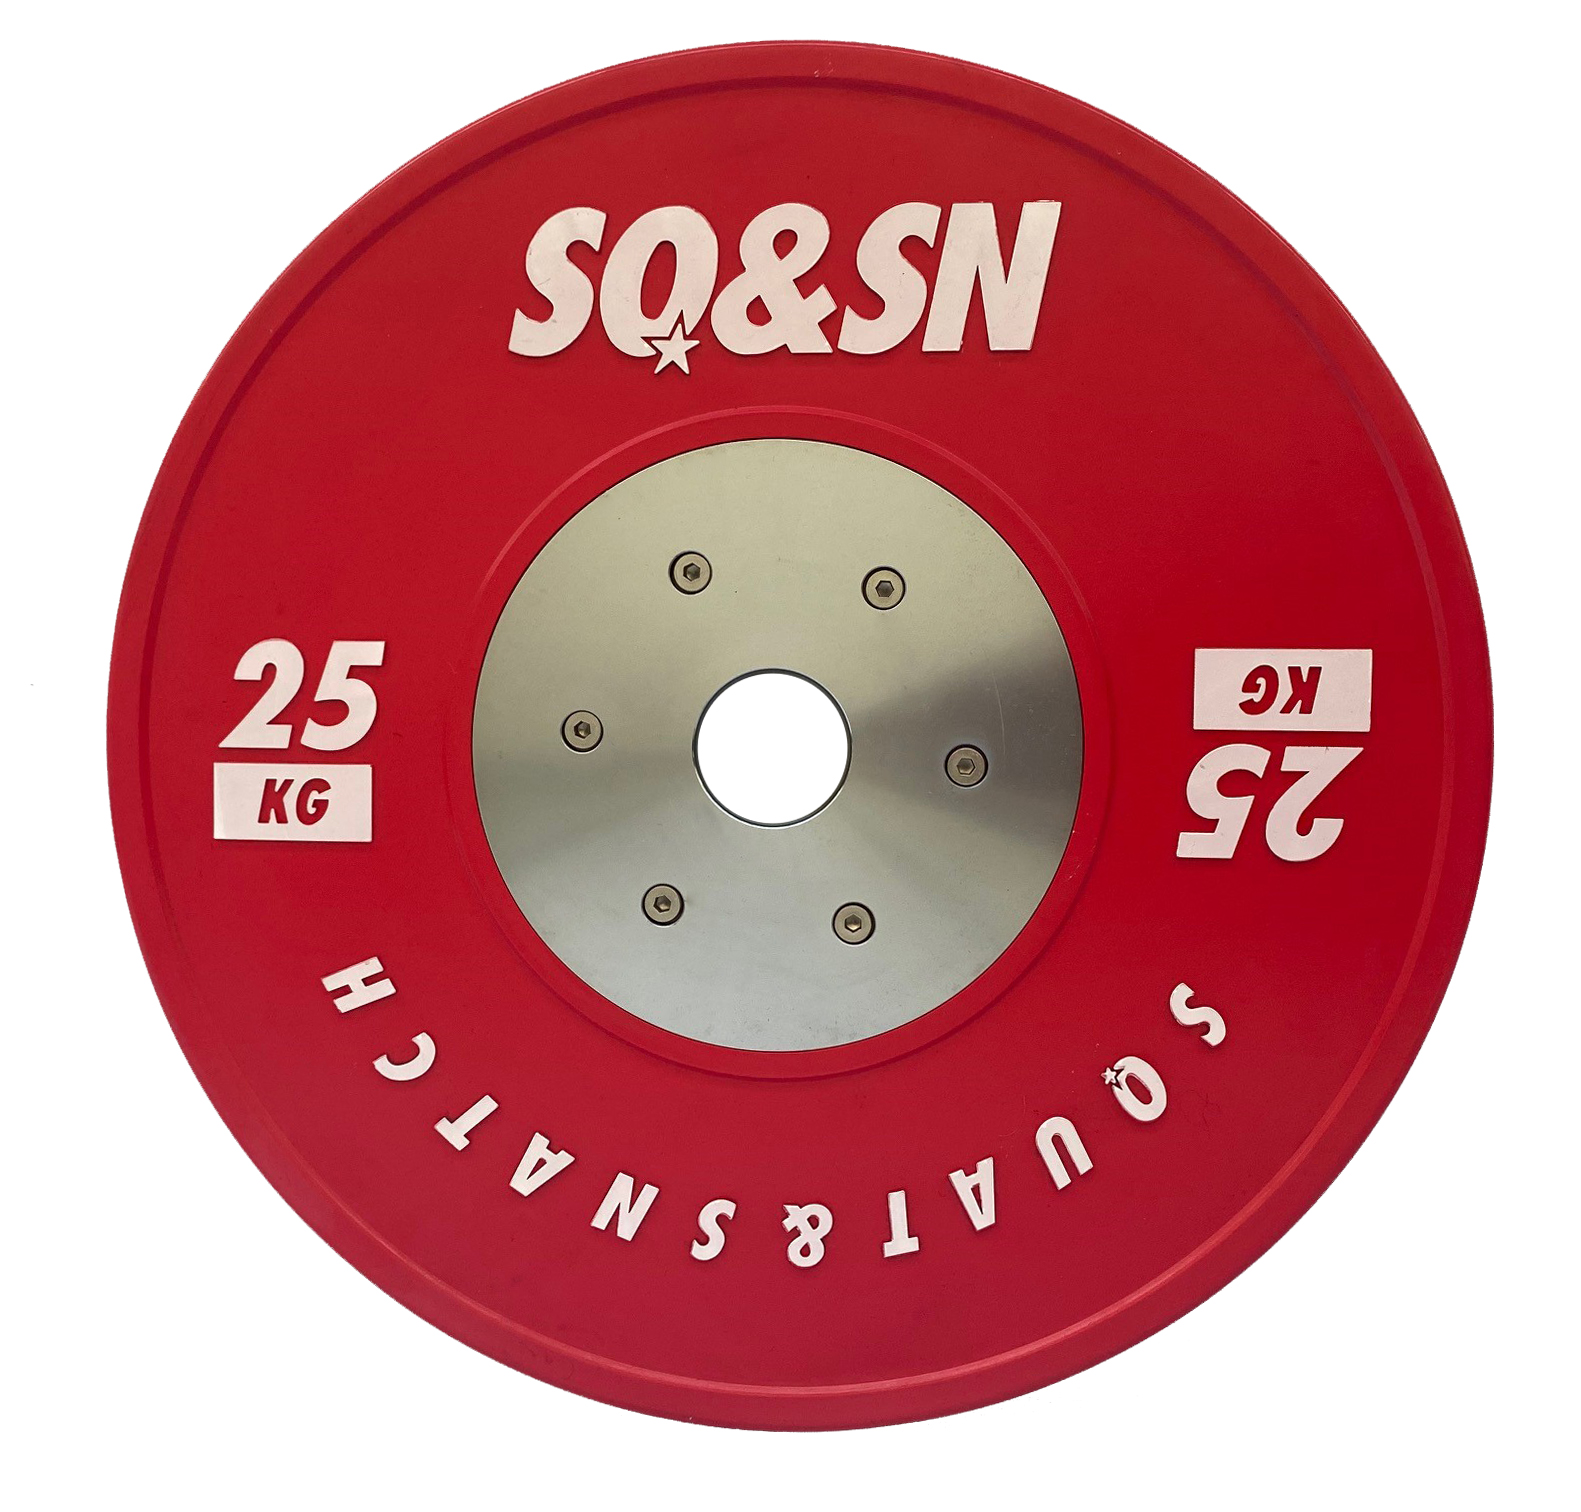 Brug SQ&SN Competition Bumper Plate 25 kg Red til en forbedret oplevelse